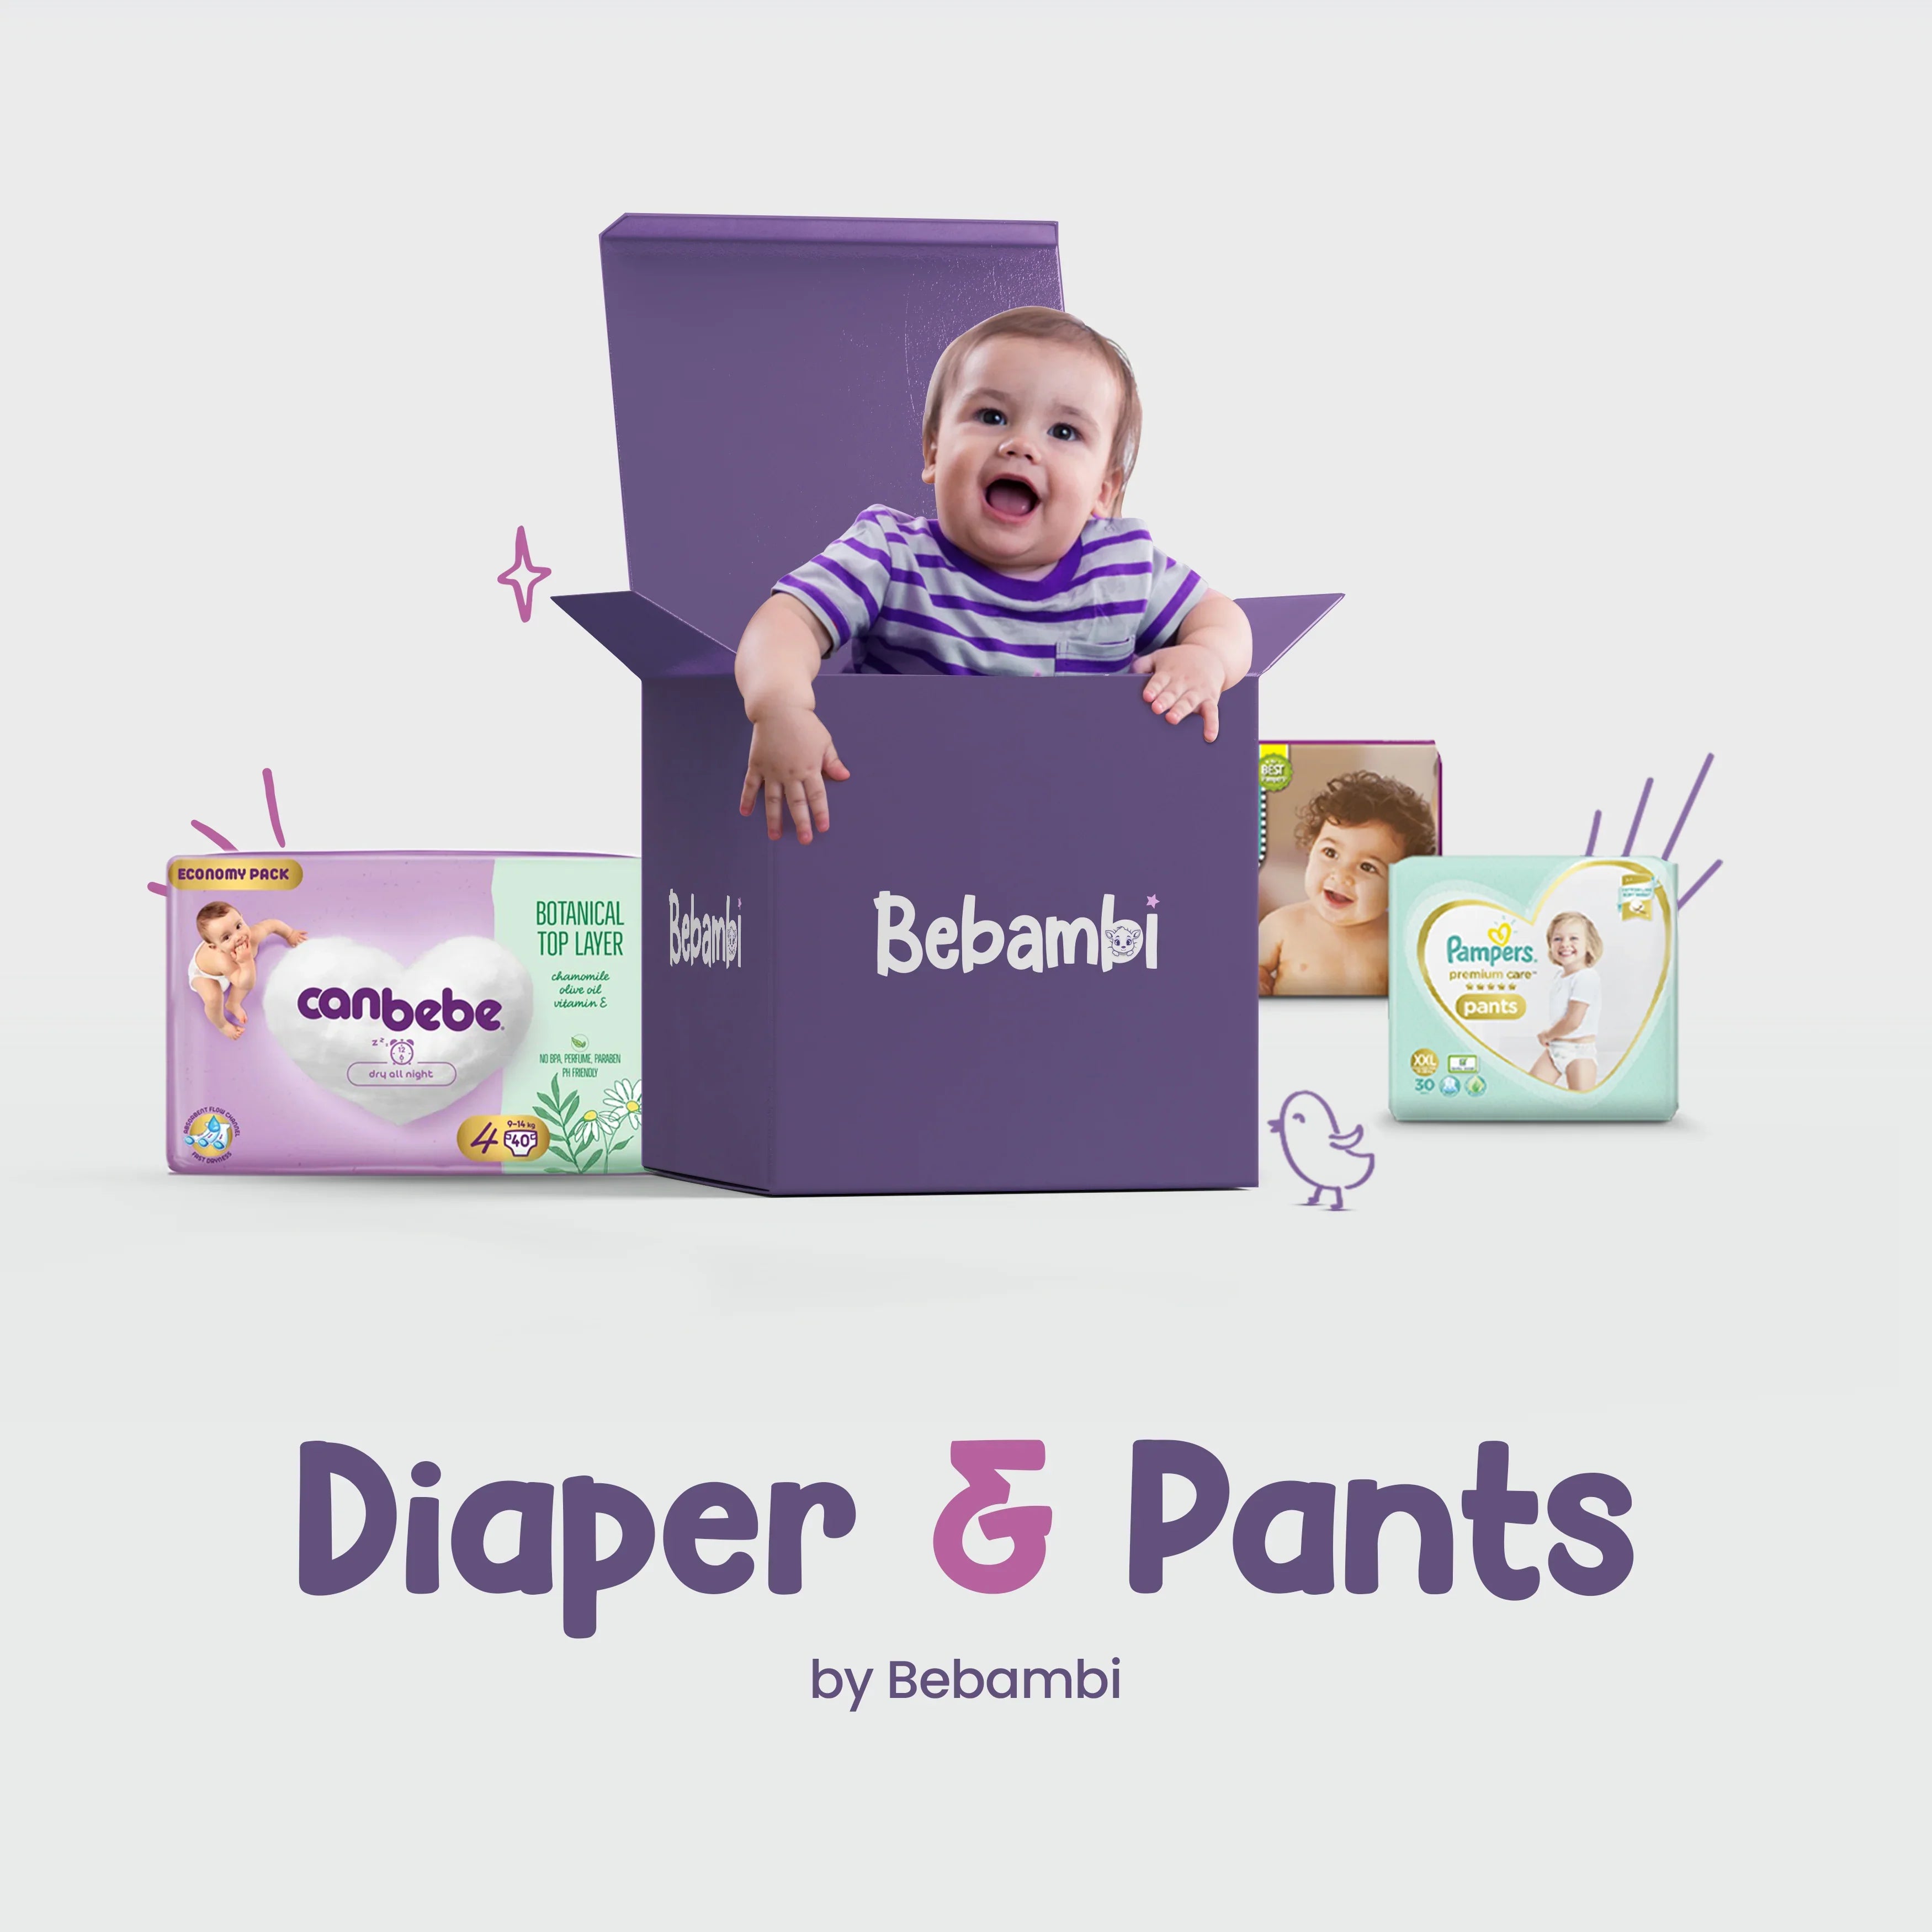 Diaper & Pants